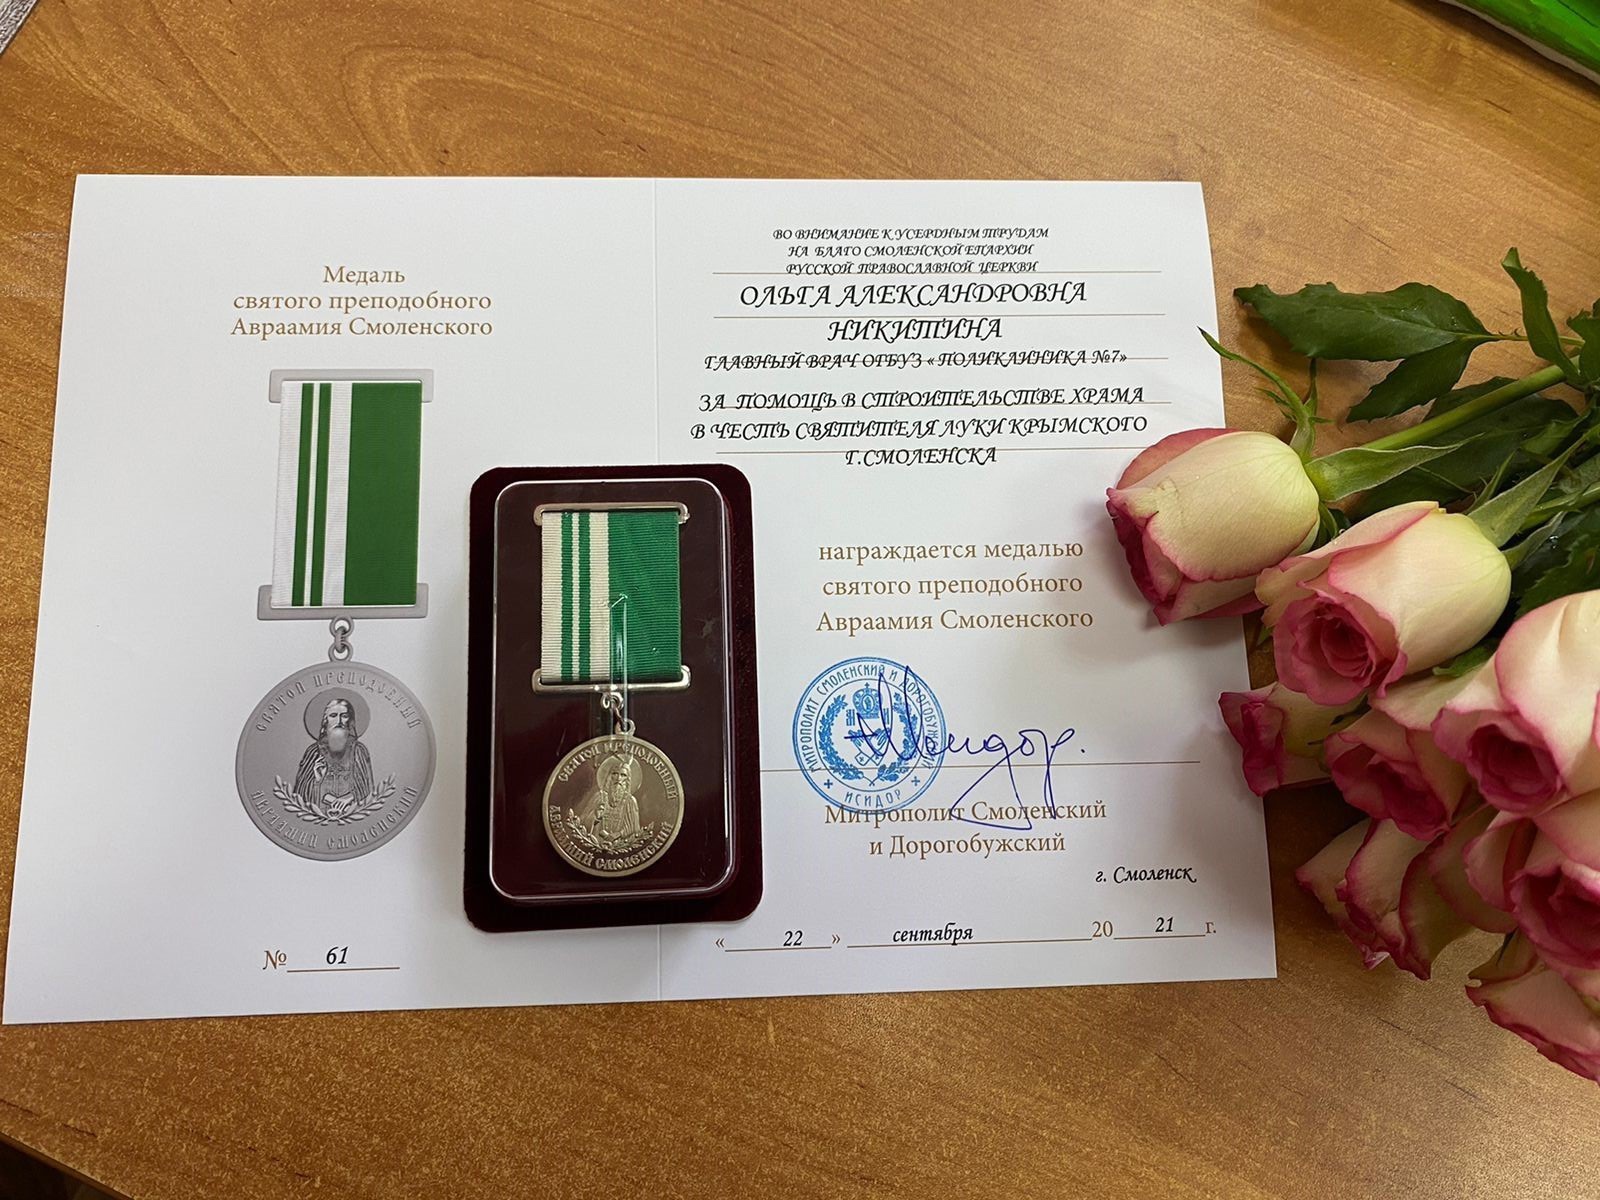 Главврача поликлиники №7 наградили медалью святого преподобного Авраамия Смоленского